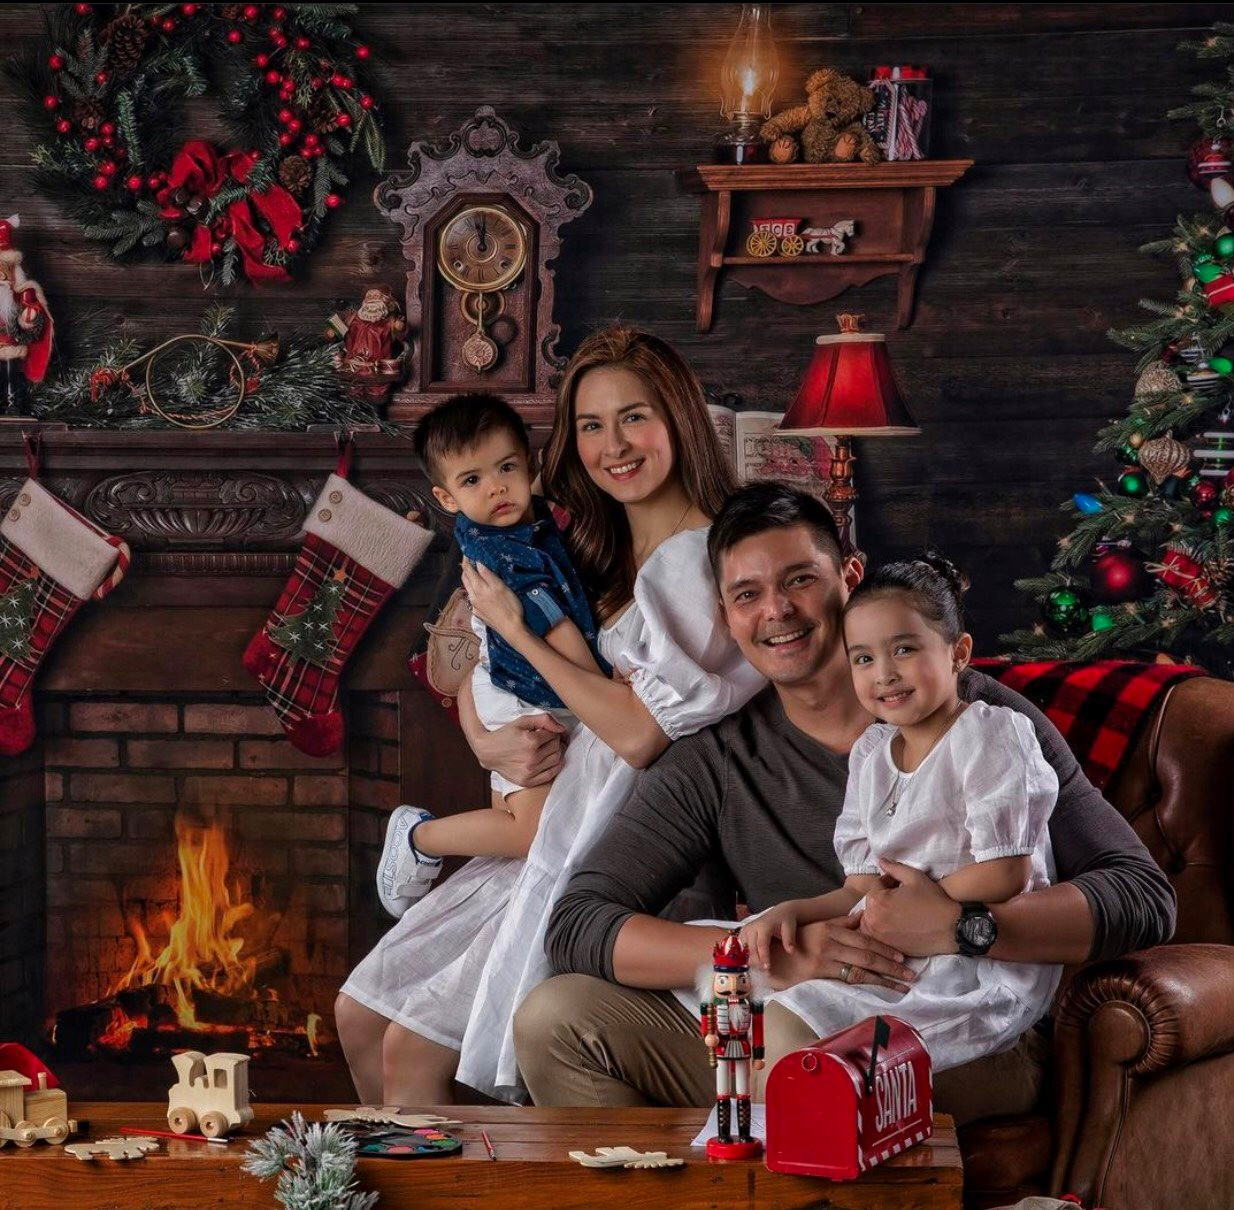 Hãy cùng đón Giáng sinh ấm áp bên gia đình và tạo ra những khoảnh khắc đáng nhớ để lưu giữ. Những bức ảnh gia đình đón Giáng sinh sẽ thực sự đầy yêu thương và hạnh phúc. Hãy xem ngay để cảm nhận cùng chúng tôi.